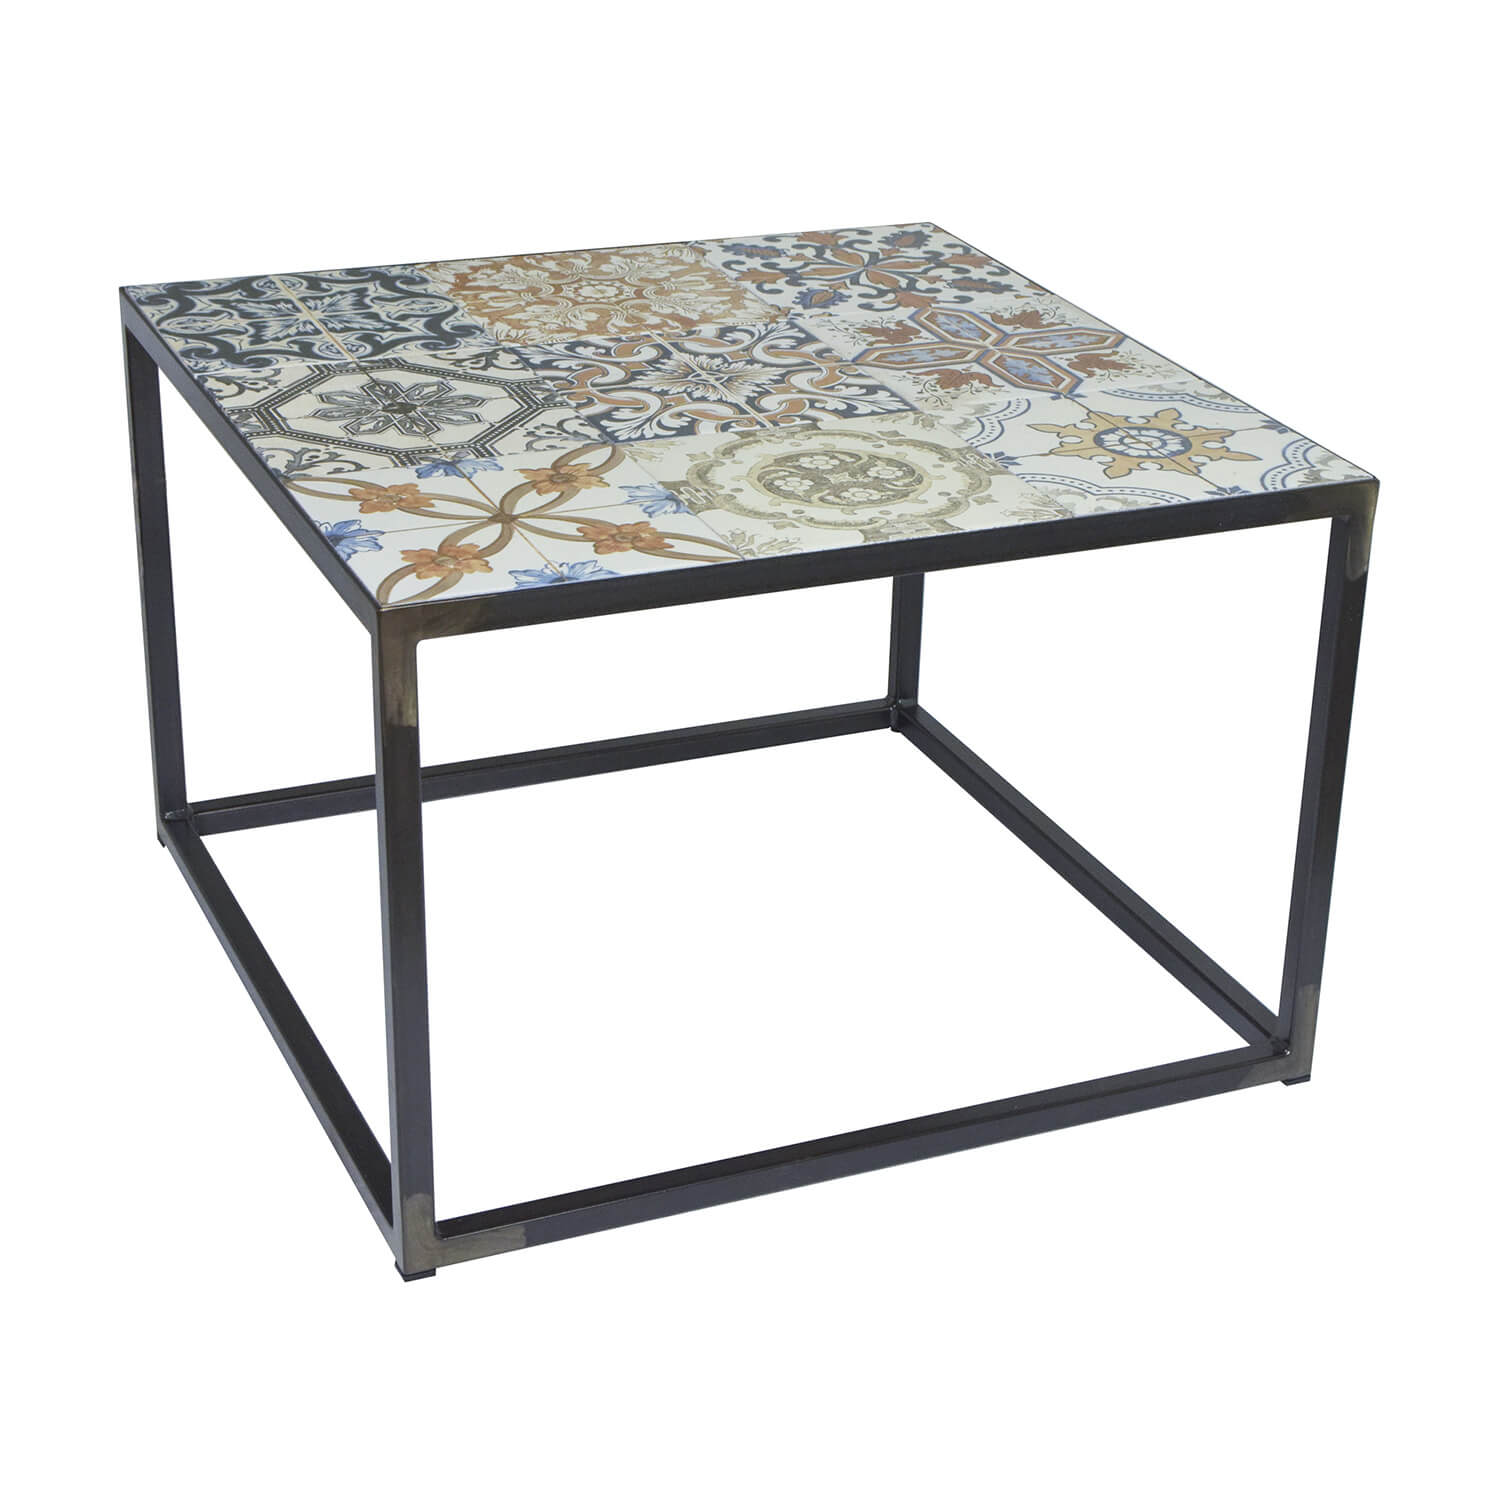 Spinder Design Kvadratisk Ibiza Blacksmith Sofabord - Multifarvet Keramik Og Stål (60X60)